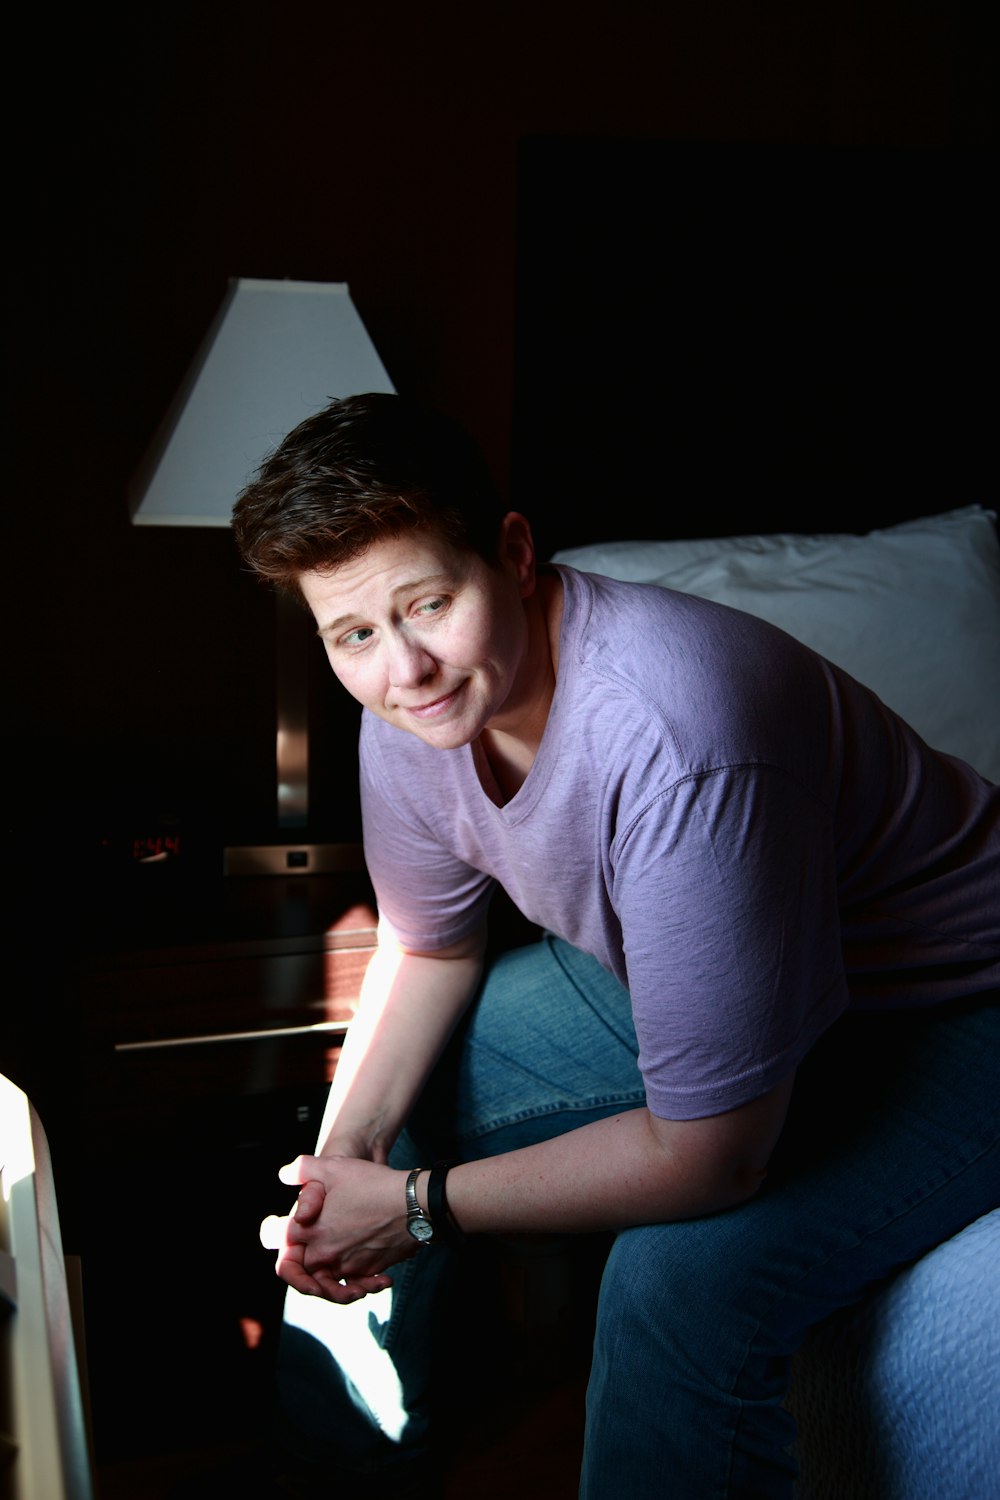 ベッドに座っているグレーのクルーネックTシャツの女性